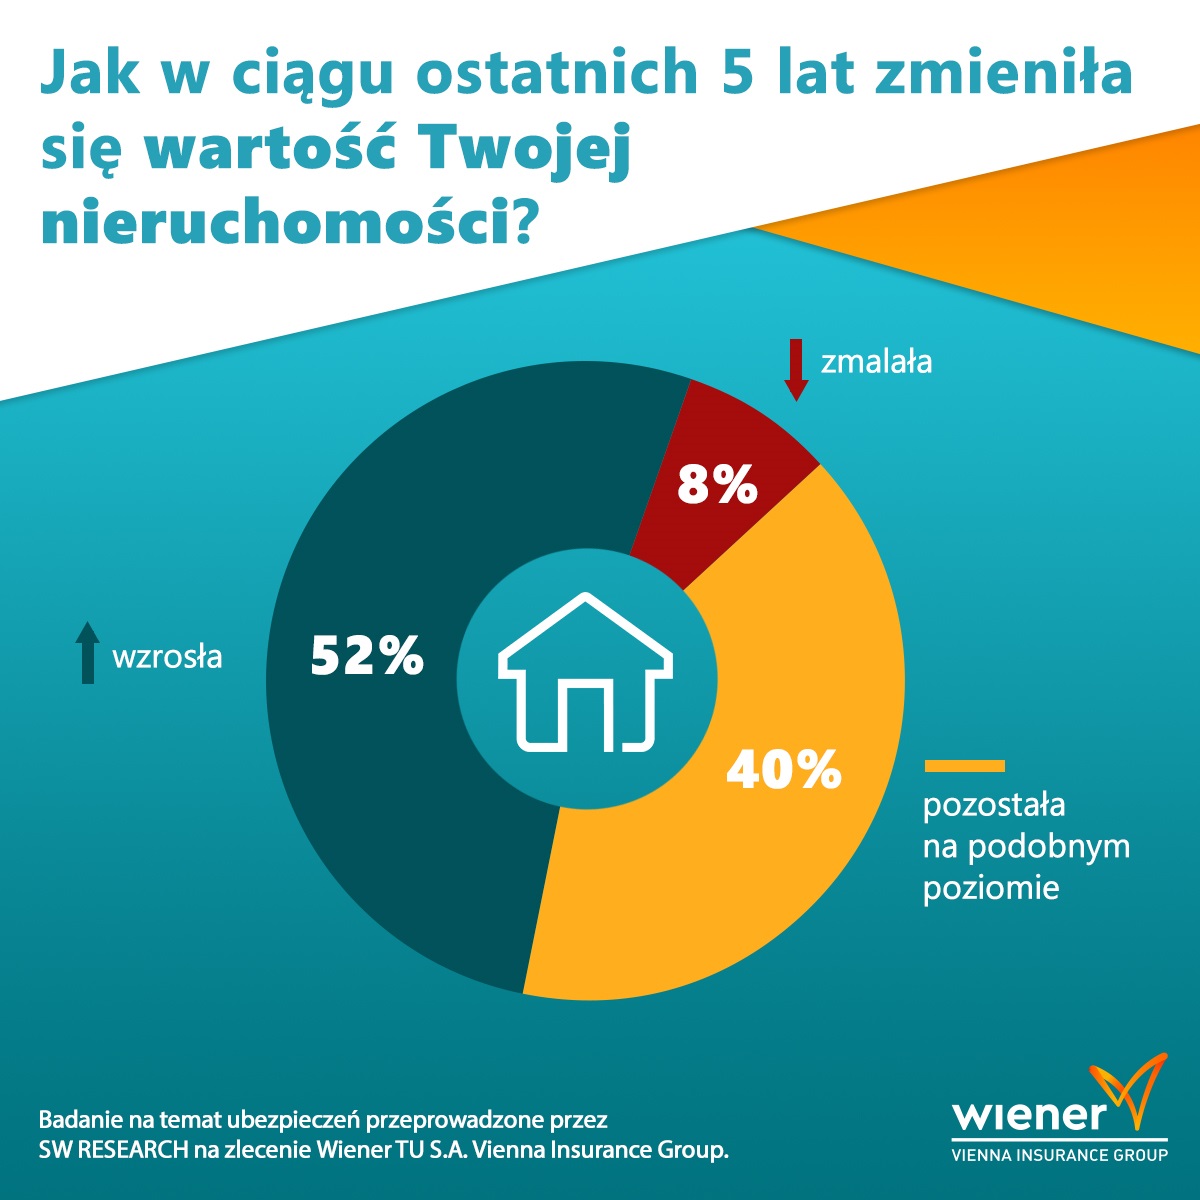  Wiener - Jak w ciągu ostatnich 5 lat zmieniła się wartość Twojej nieruchomości?